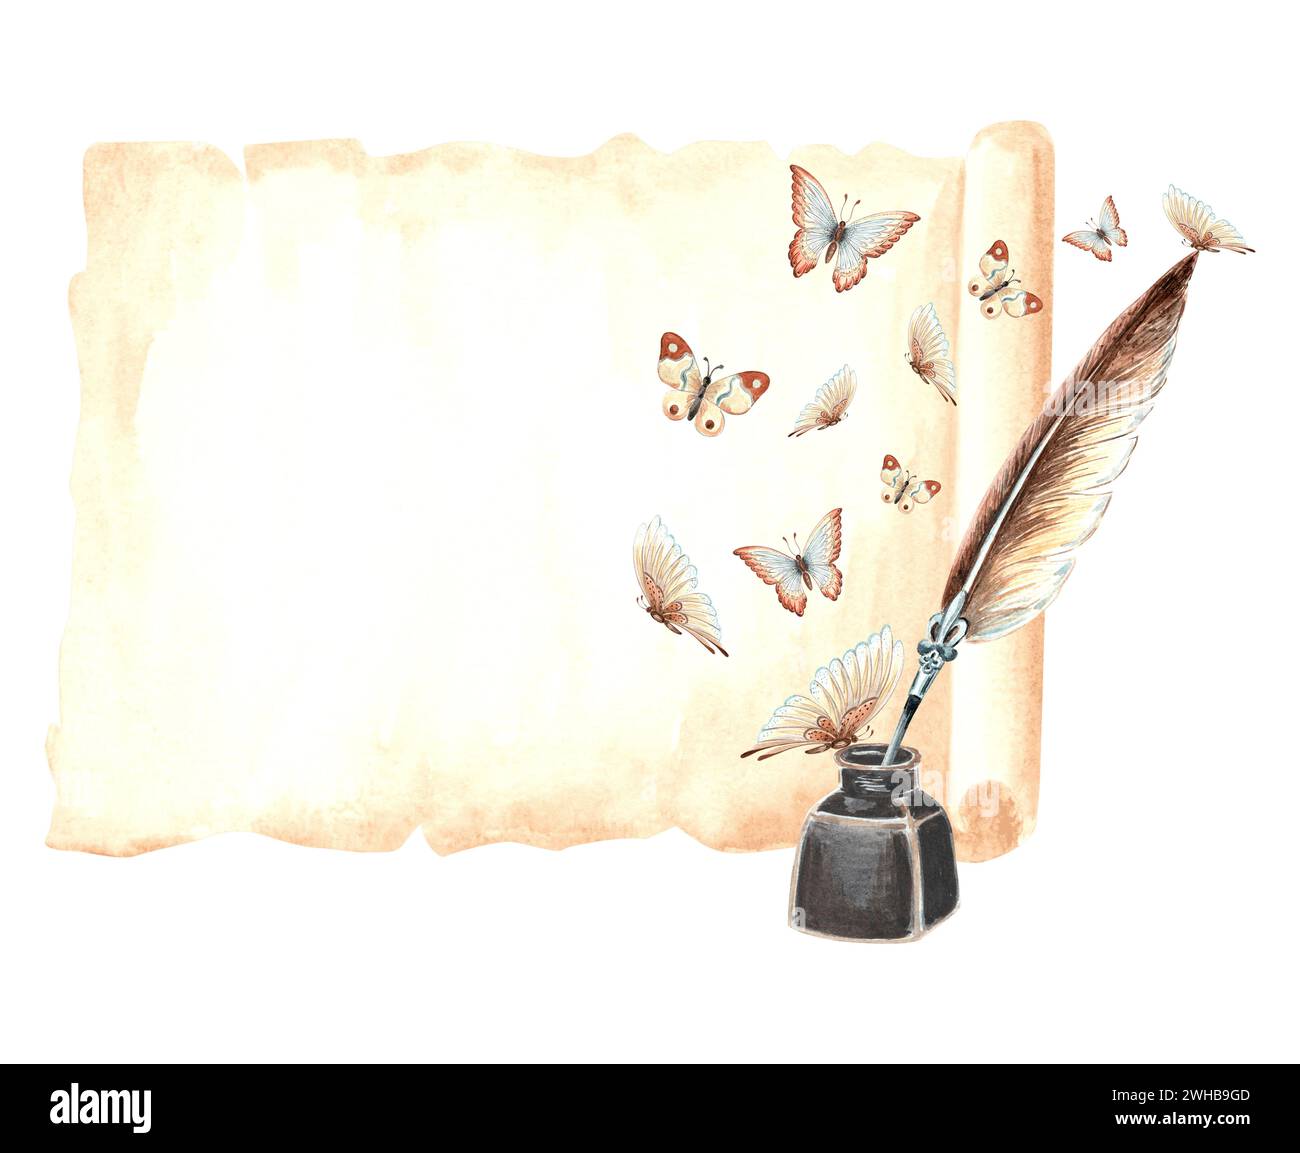 Blatt Papyruspapier, Tintenfass mit Federstift und wild flatternden Schmetterlingen. Vintage Schreibzubehör, alter Brief. Handgezeichnetes Aquarell isoliert Stockfoto